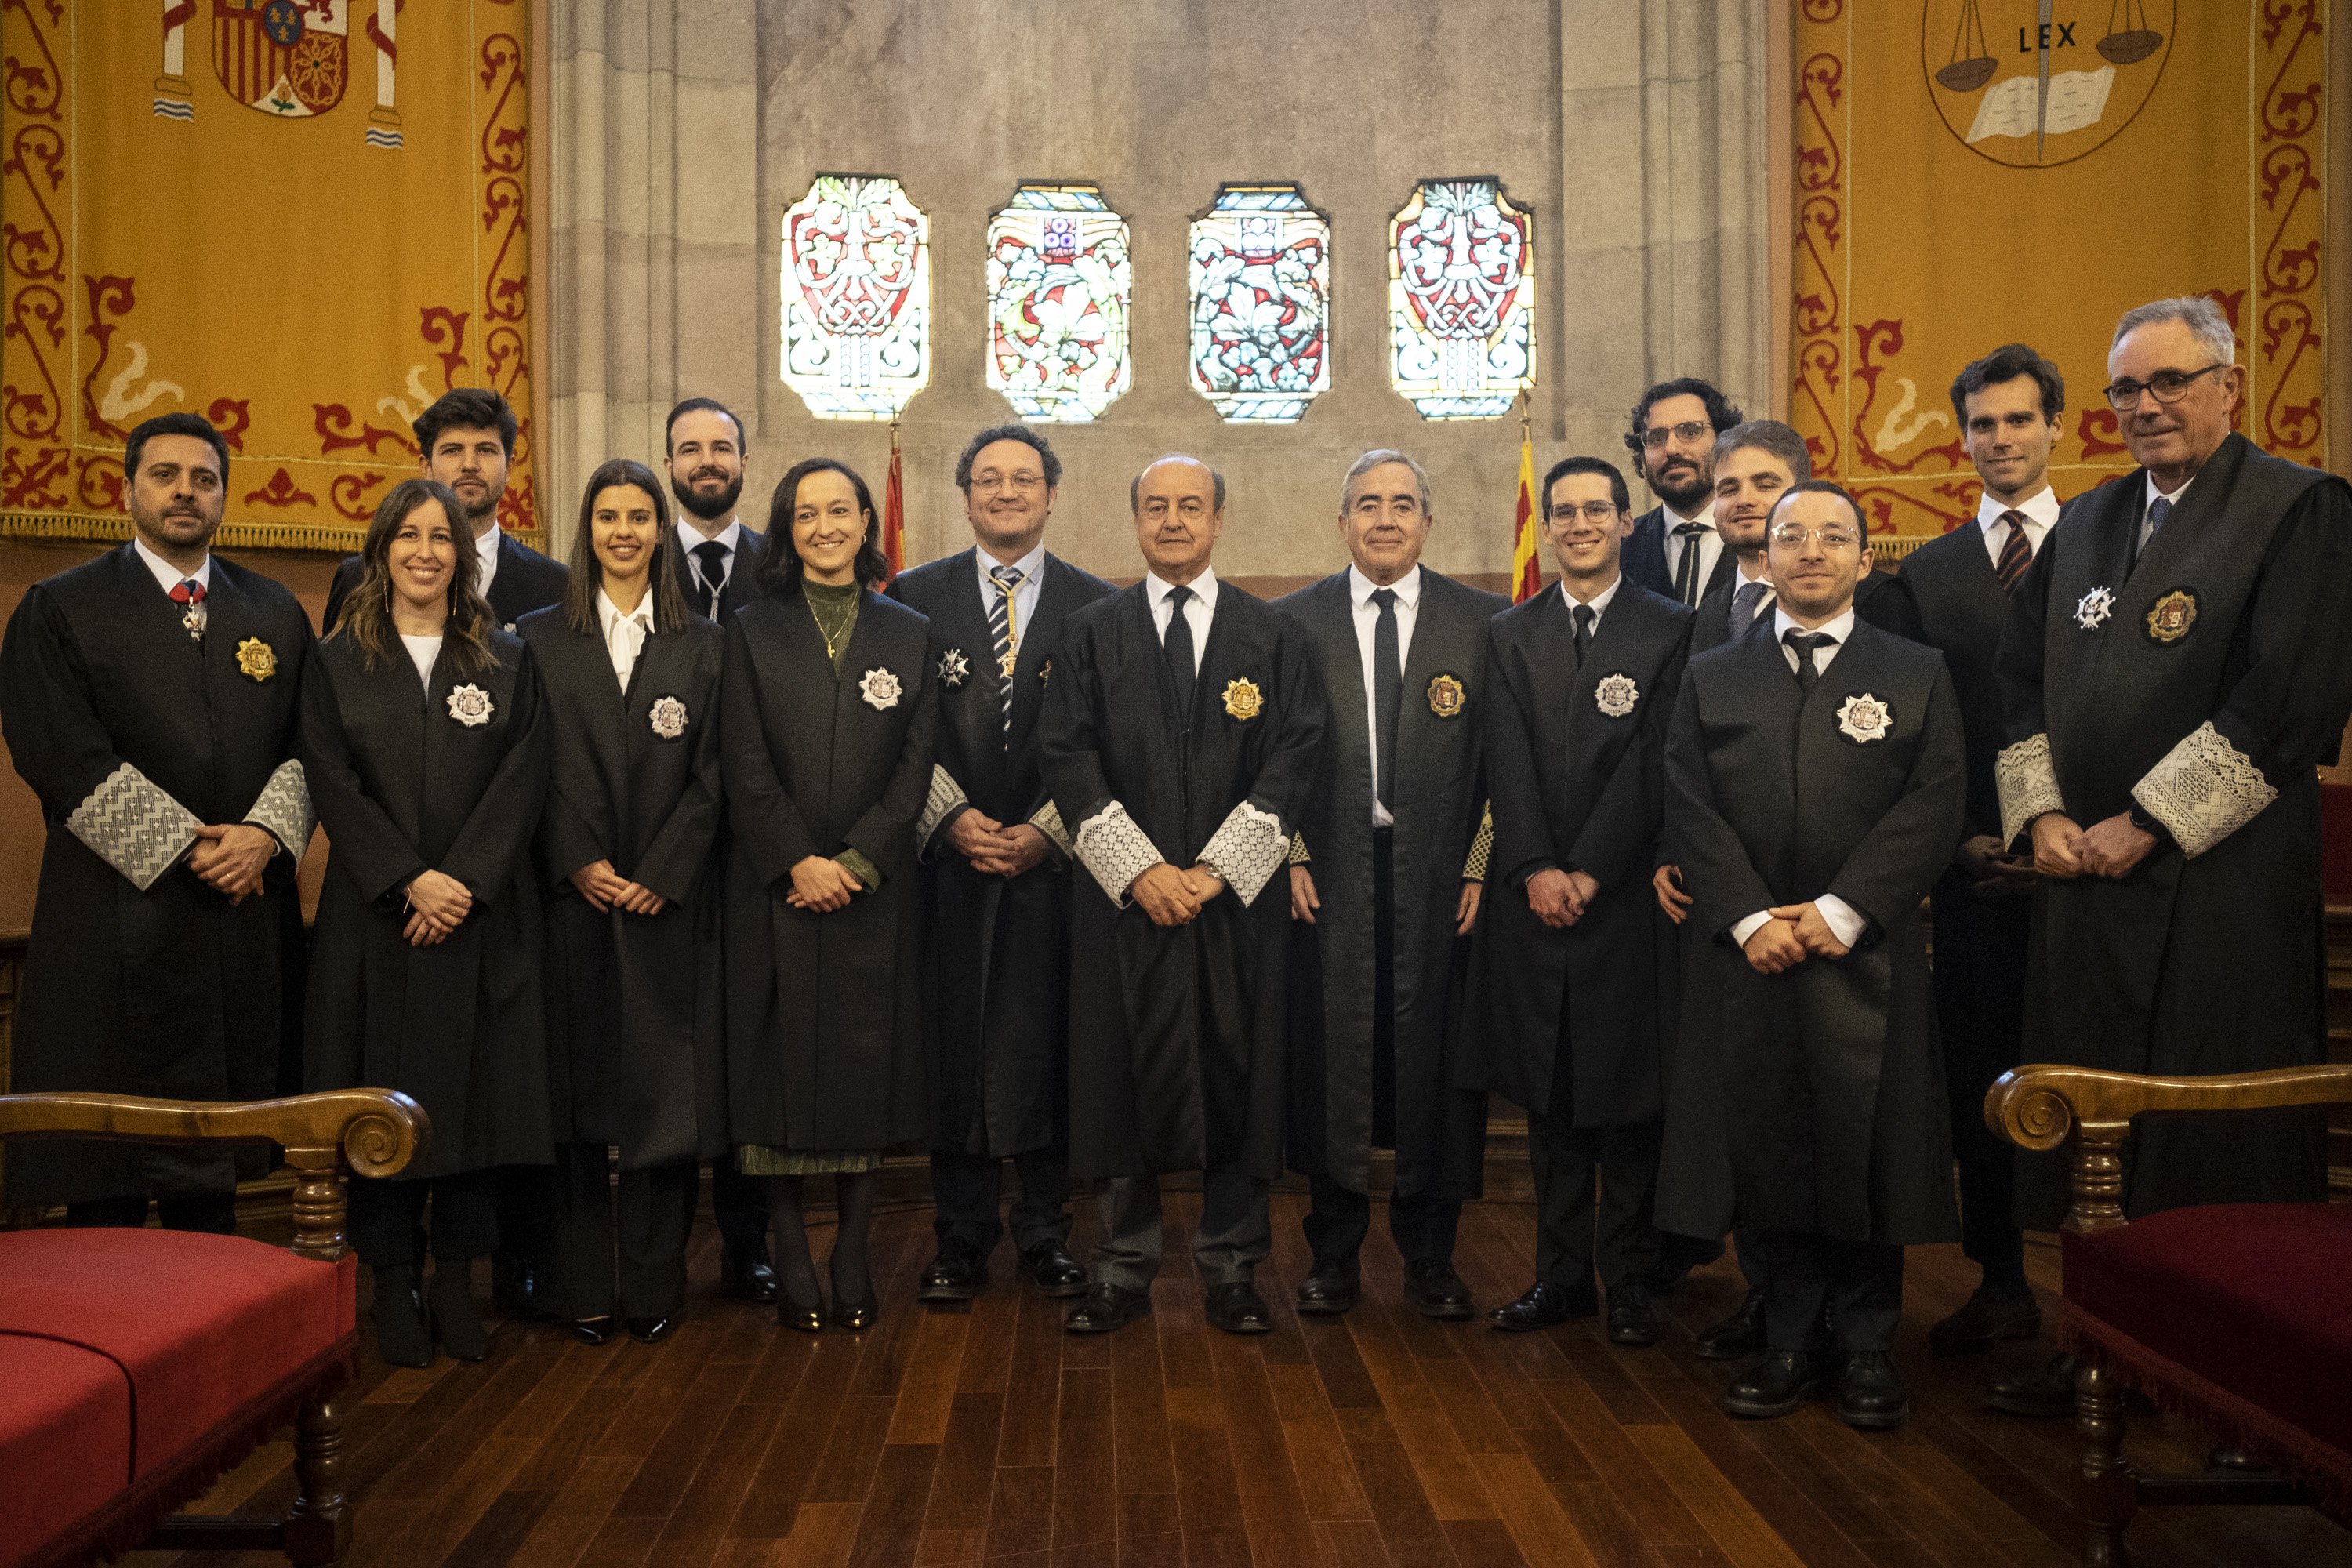 El Govern eleva al C1 el nivel de catalán necesario para sumar puntos a los aspirantes a presidir el TSJC